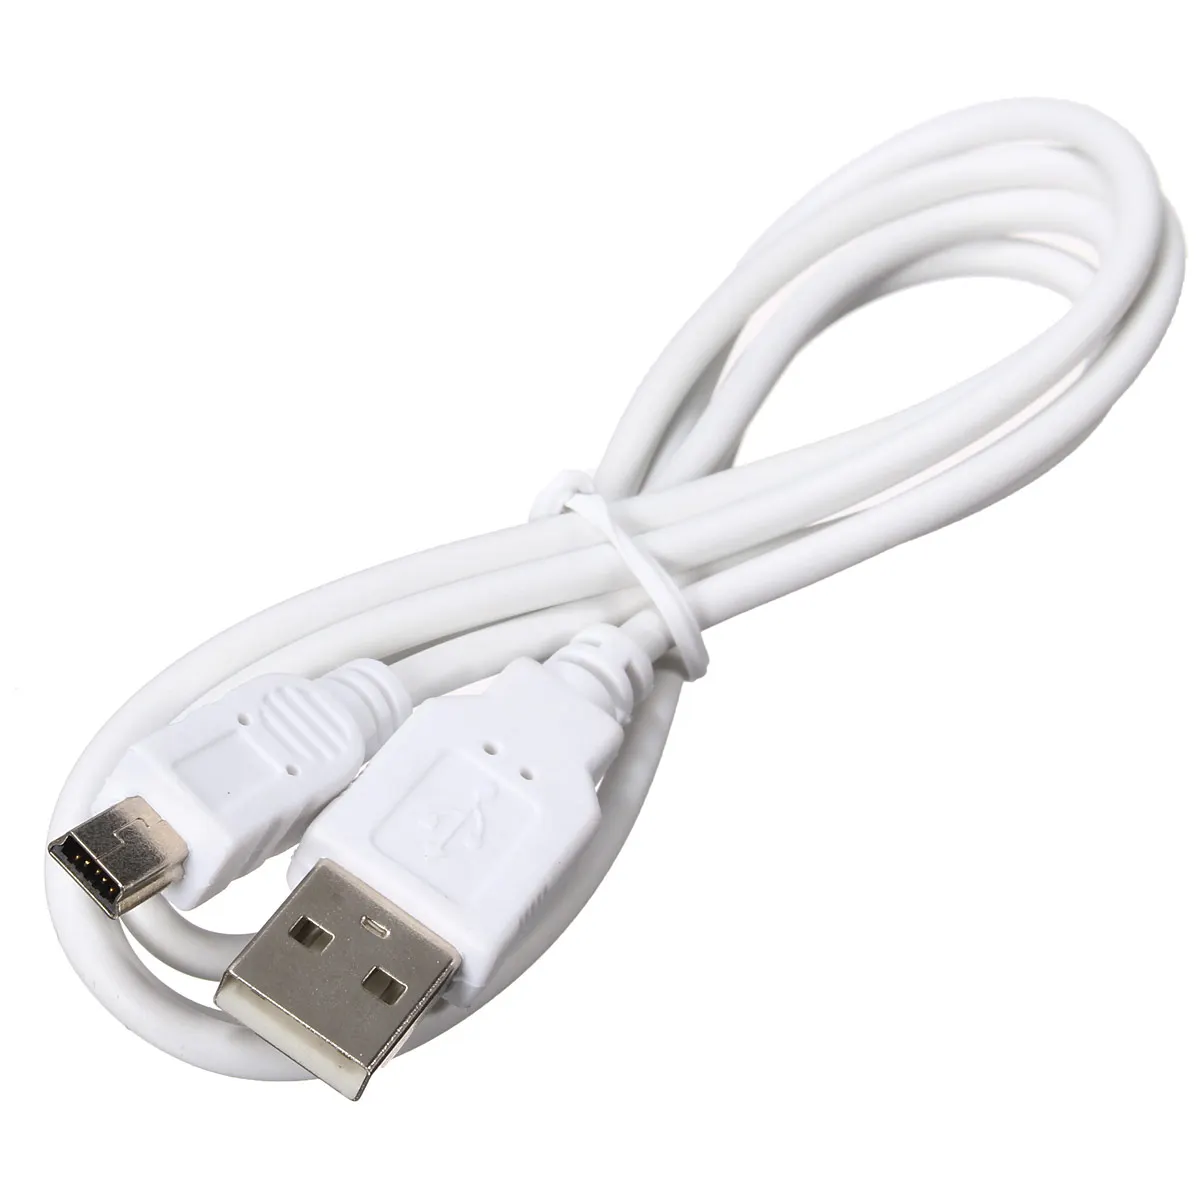 LEORY 25 см 90 градусов угловой мини USB кабель Mini USB 2,0 для синхронизации данных Зарядное устройство кабель для мобильного телефона MP3 MP4 gps Камера